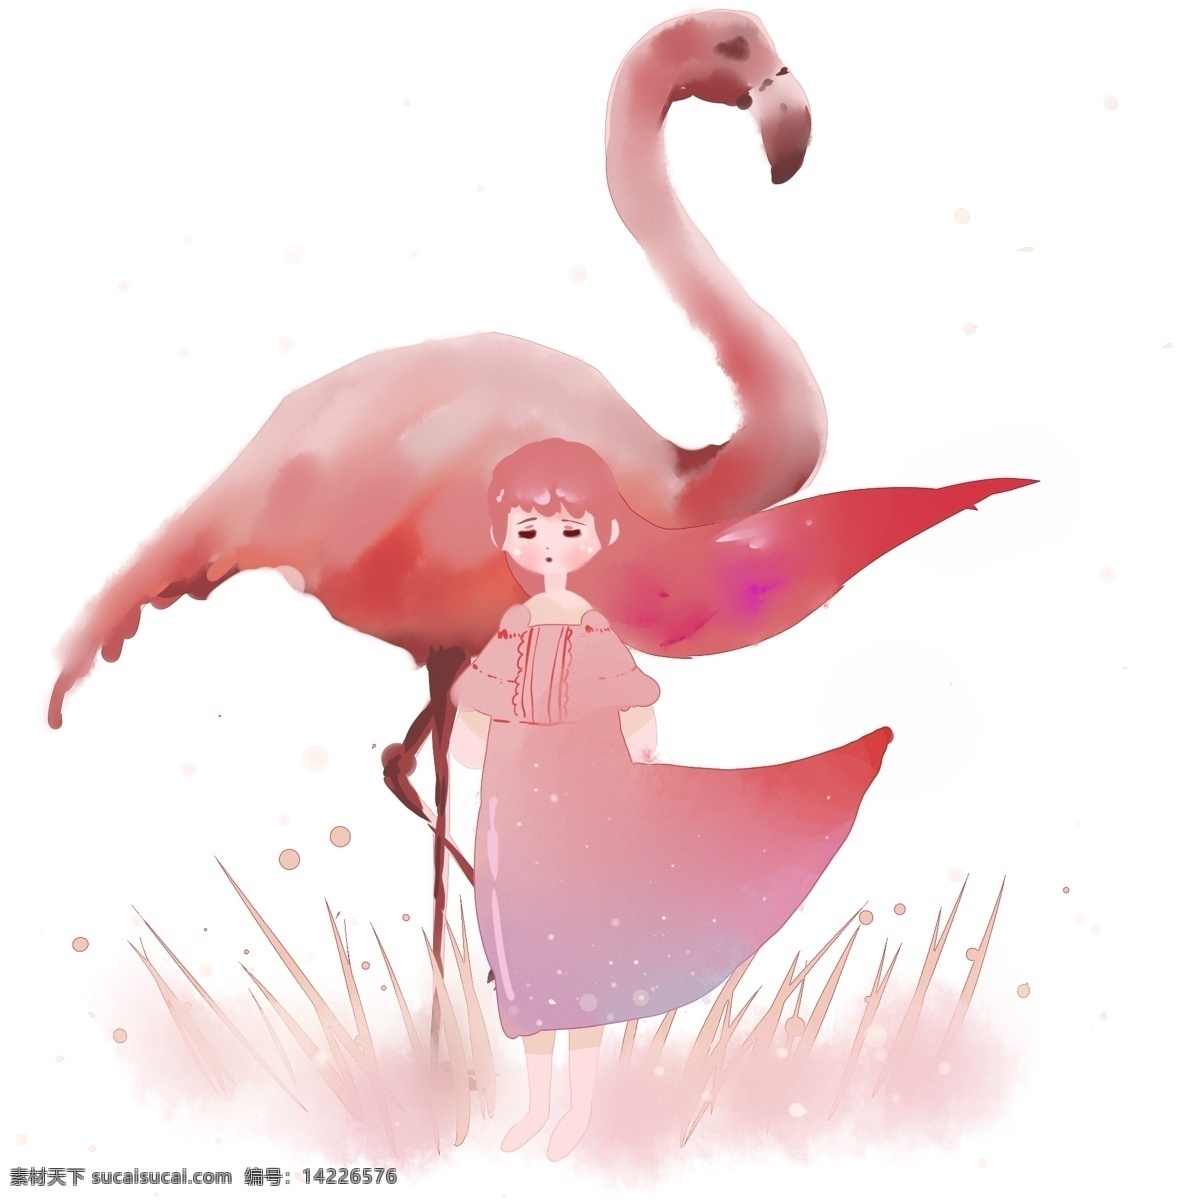 梦幻 主题 系列 二 火烈鸟 女孩儿 卡通 手绘 站立 草丛 粉色 飞舞的头发 连衣裙 蓝色飘带 星空下 水彩